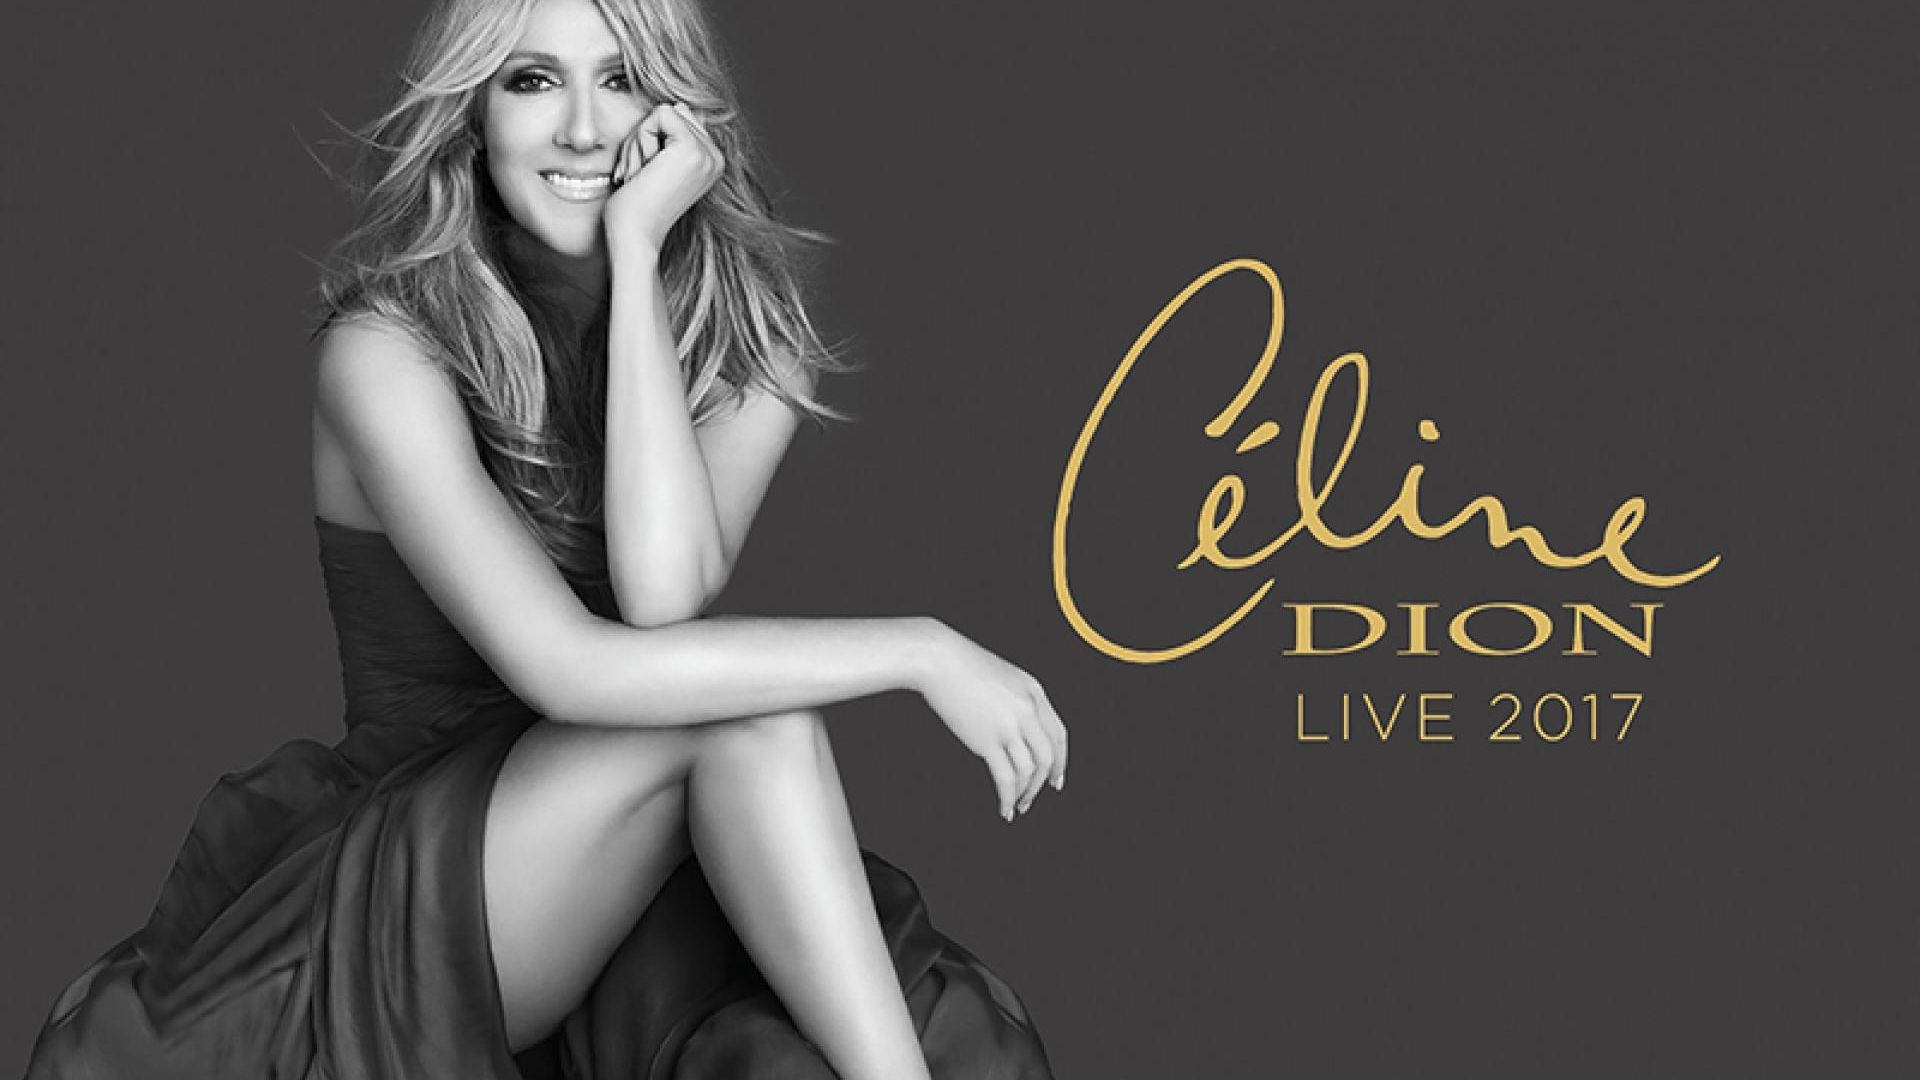 Celine Dion Live 2017 Background